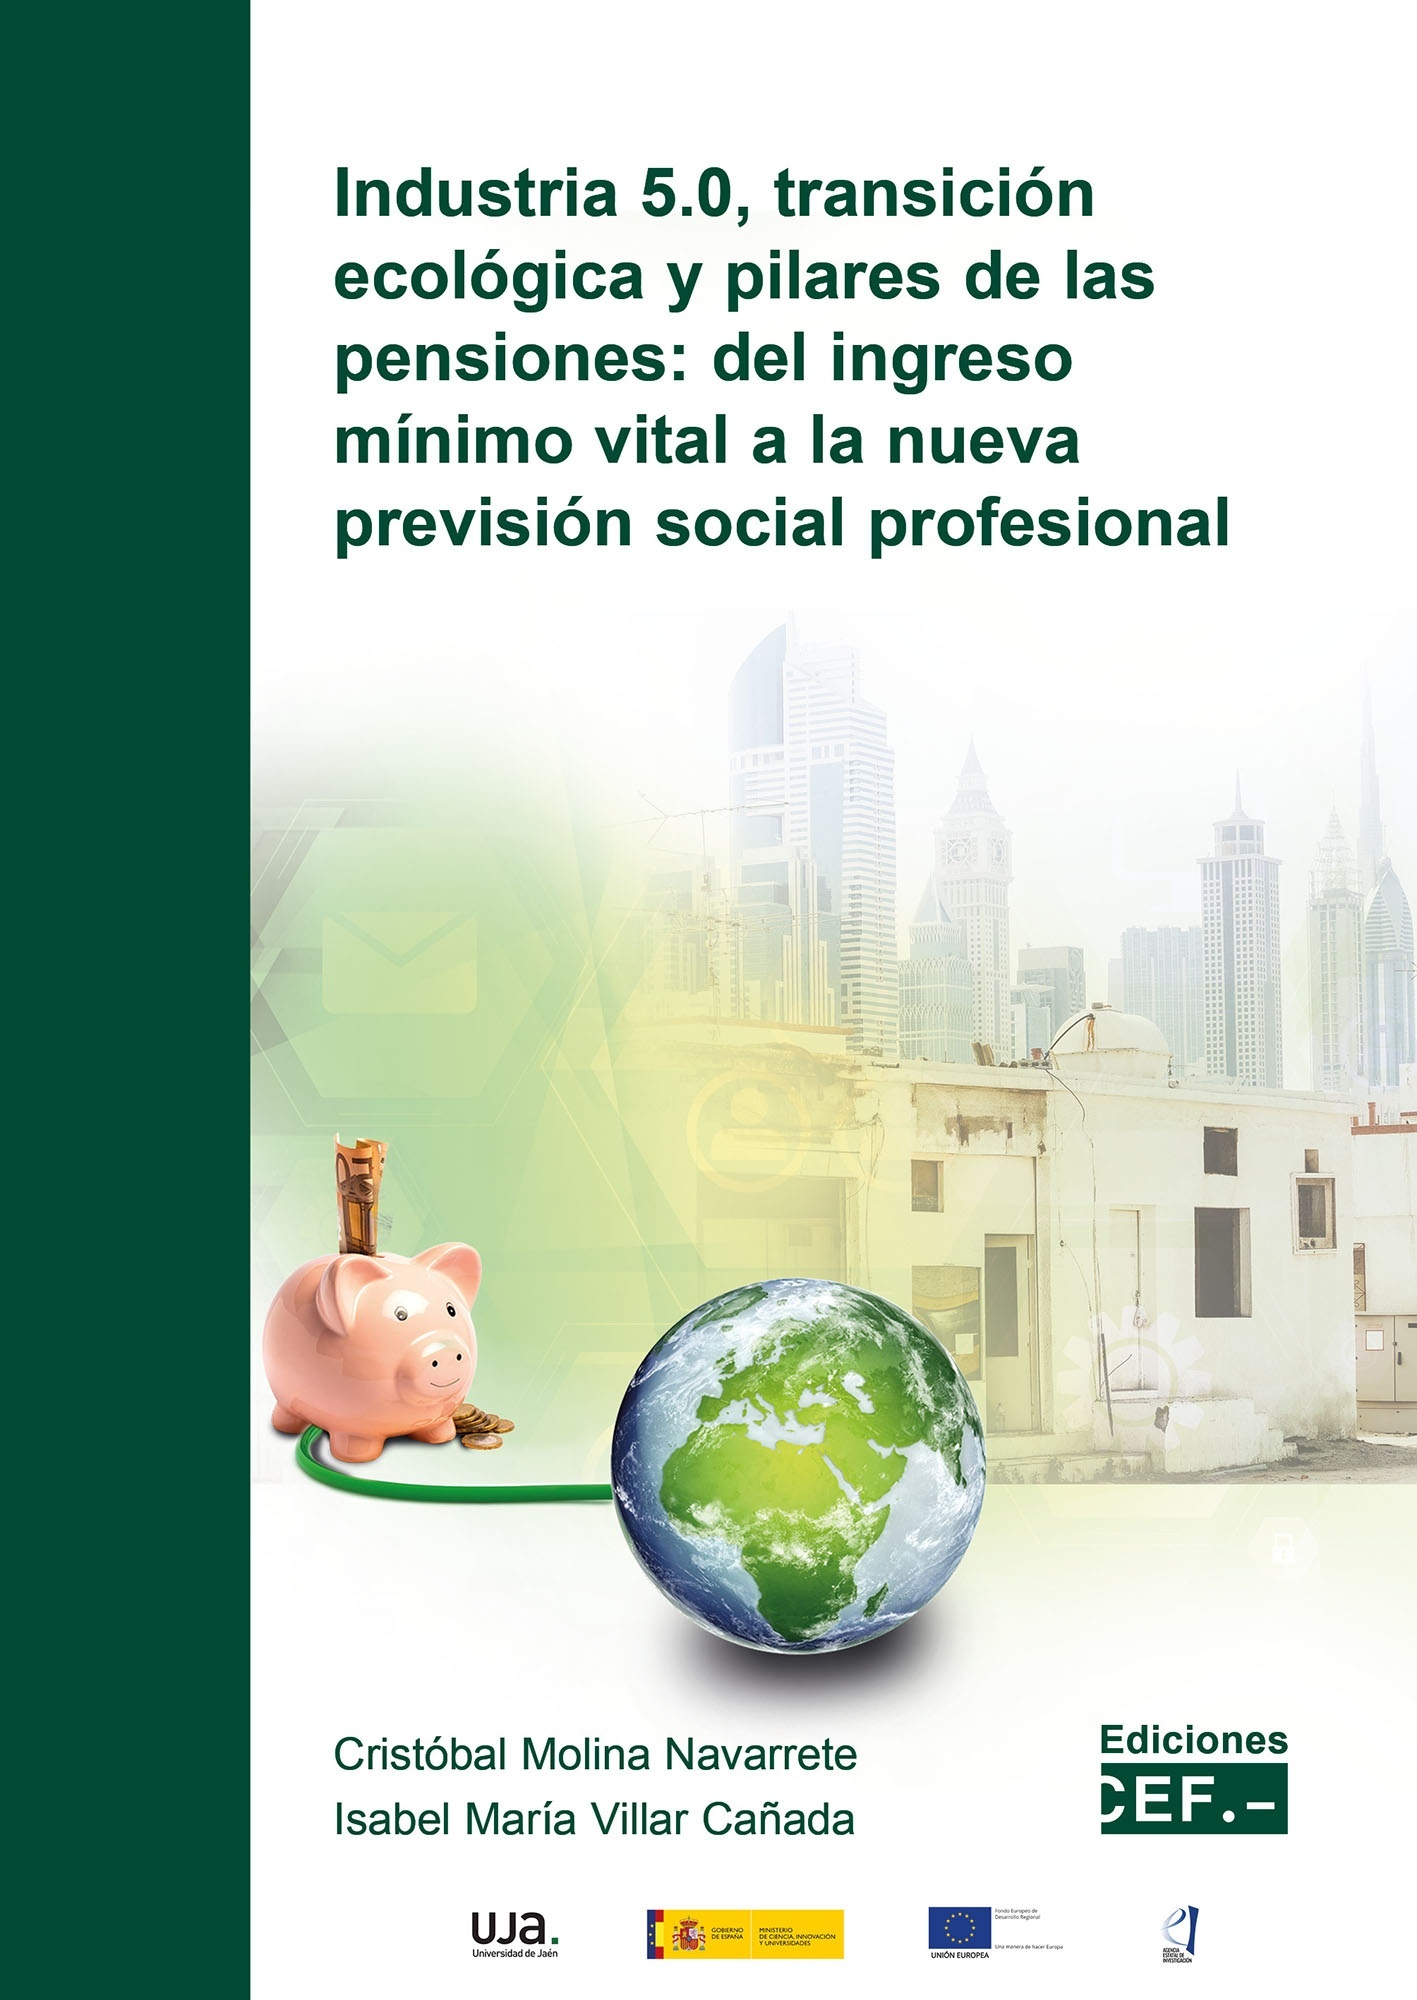 Industria 5.0, transición ecológica y pilares de las pensiones "Del ingreso mínimo vital a la nueva previsión social profesional"